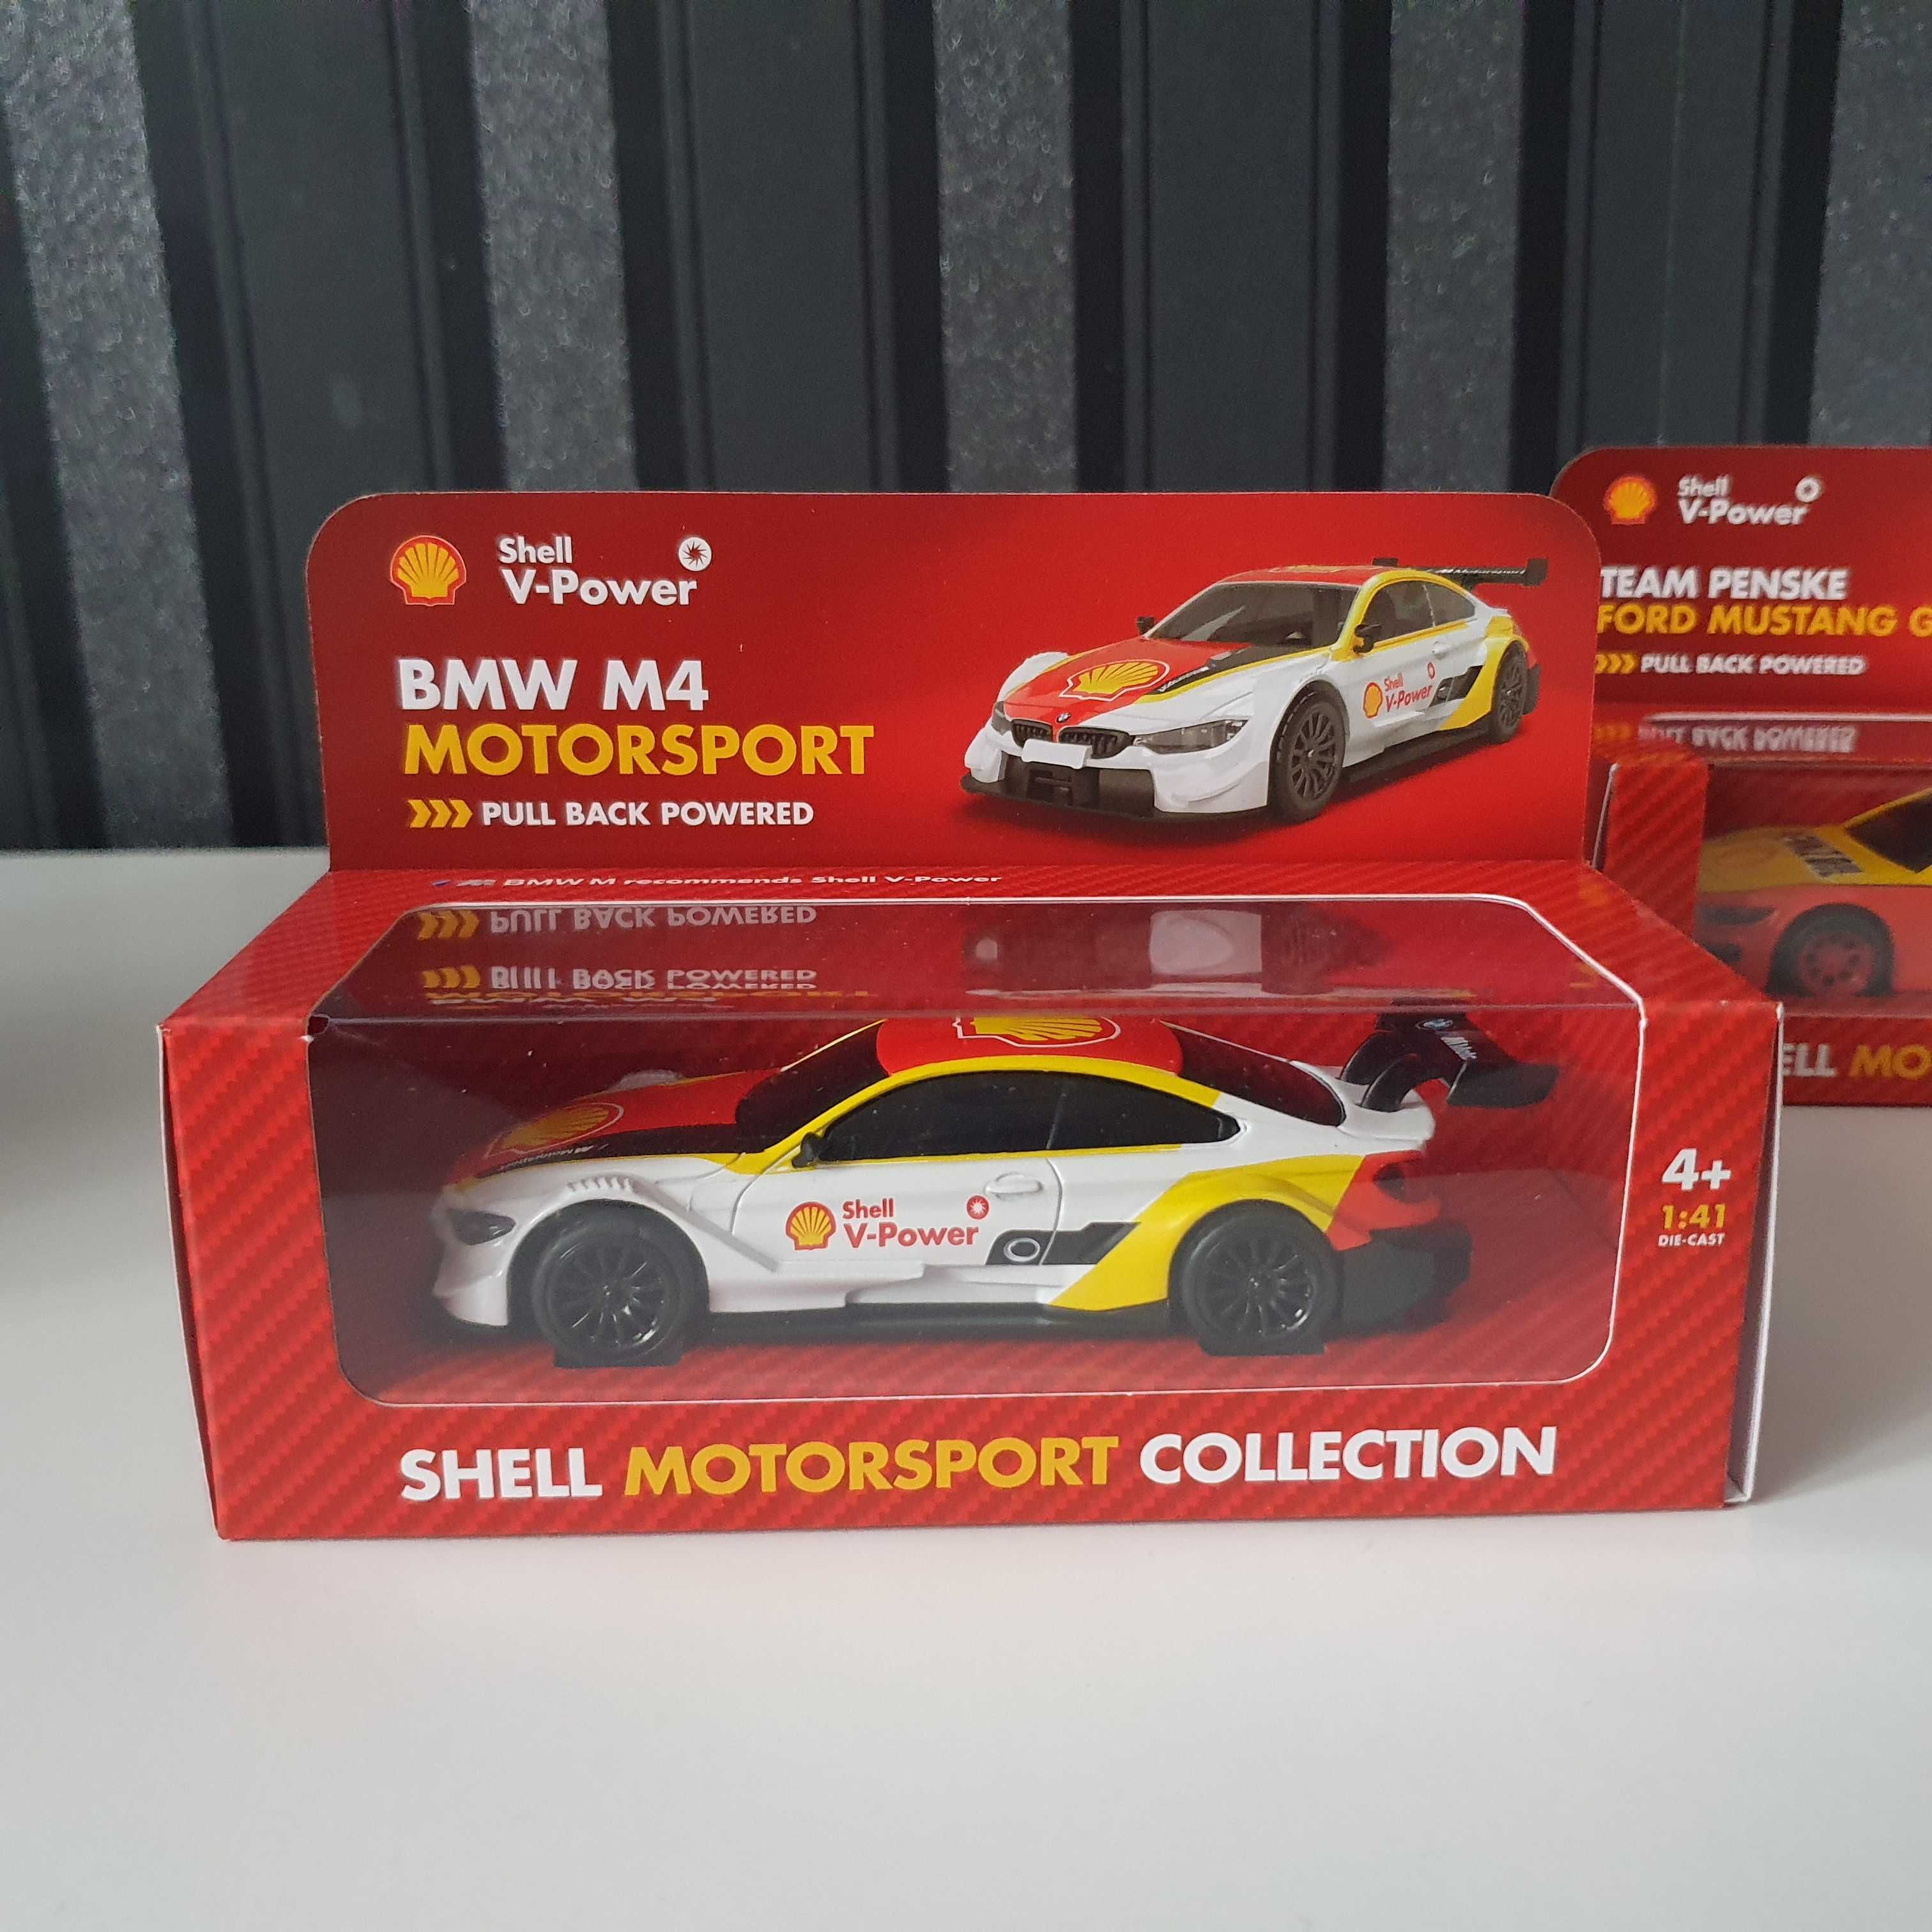 Метална колекция Shell Моторни спортове